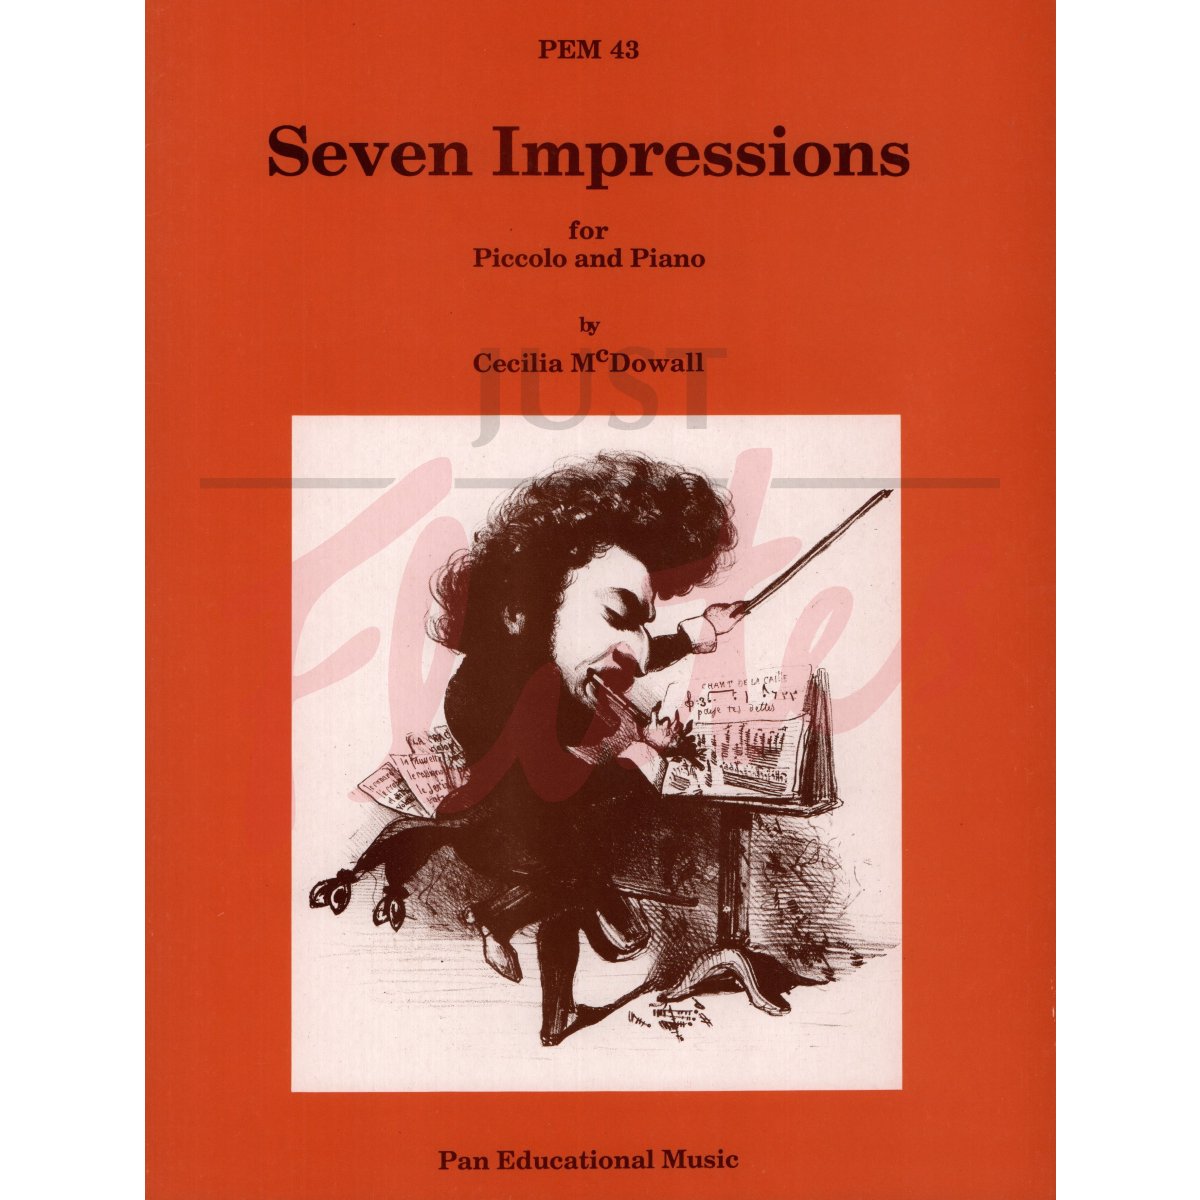 Seven Impressions for Piccolo and Piano